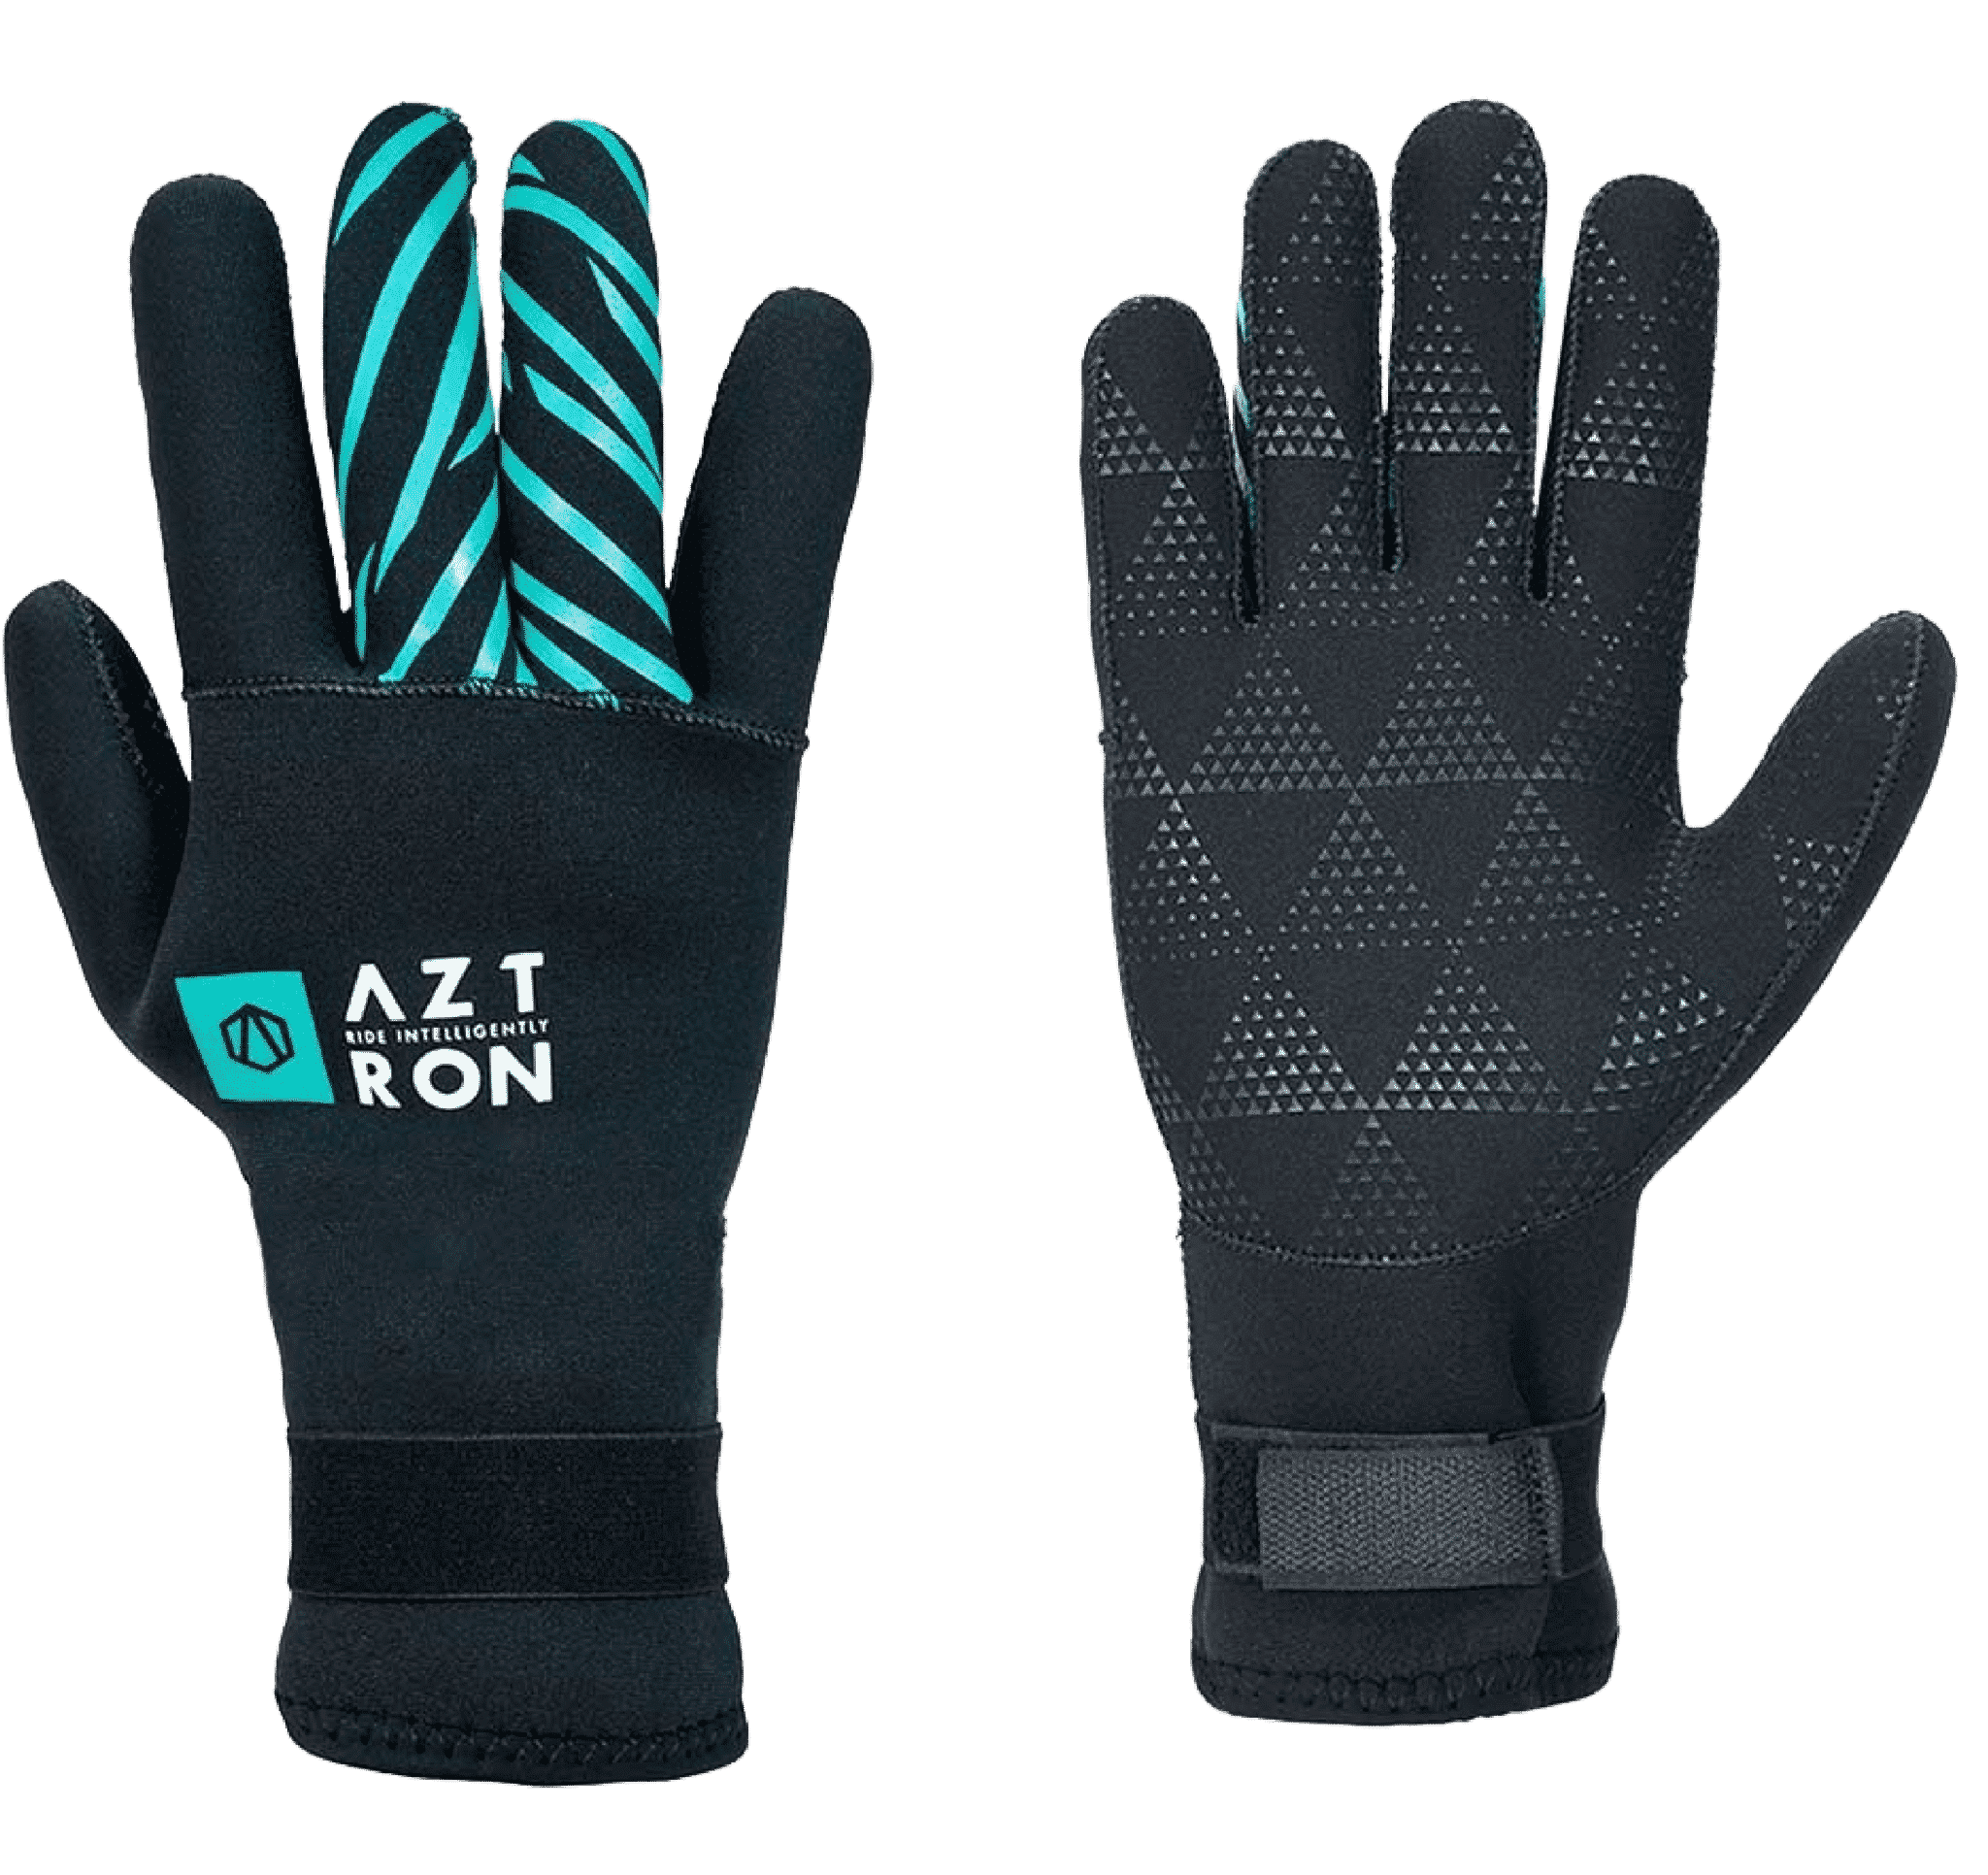 Aztron Neo Gloves 2mm